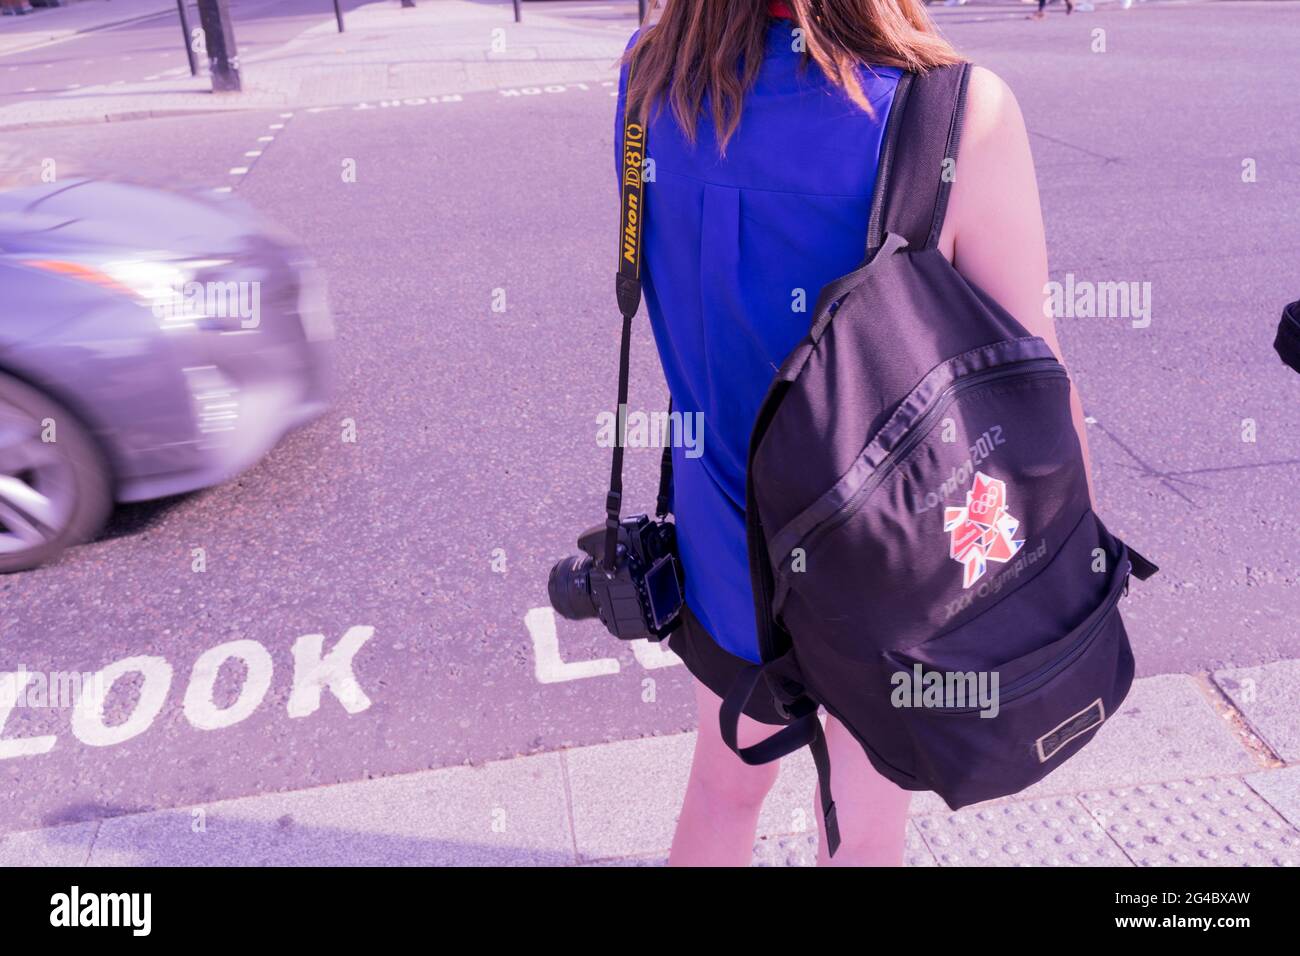 Frau in blauer Spitze trägt London 2012 Rucksack, der an Fußgängerübergangsampeln wartet, um grün zu werden, London trafalgar Square, England, Großbritannien Stockfoto